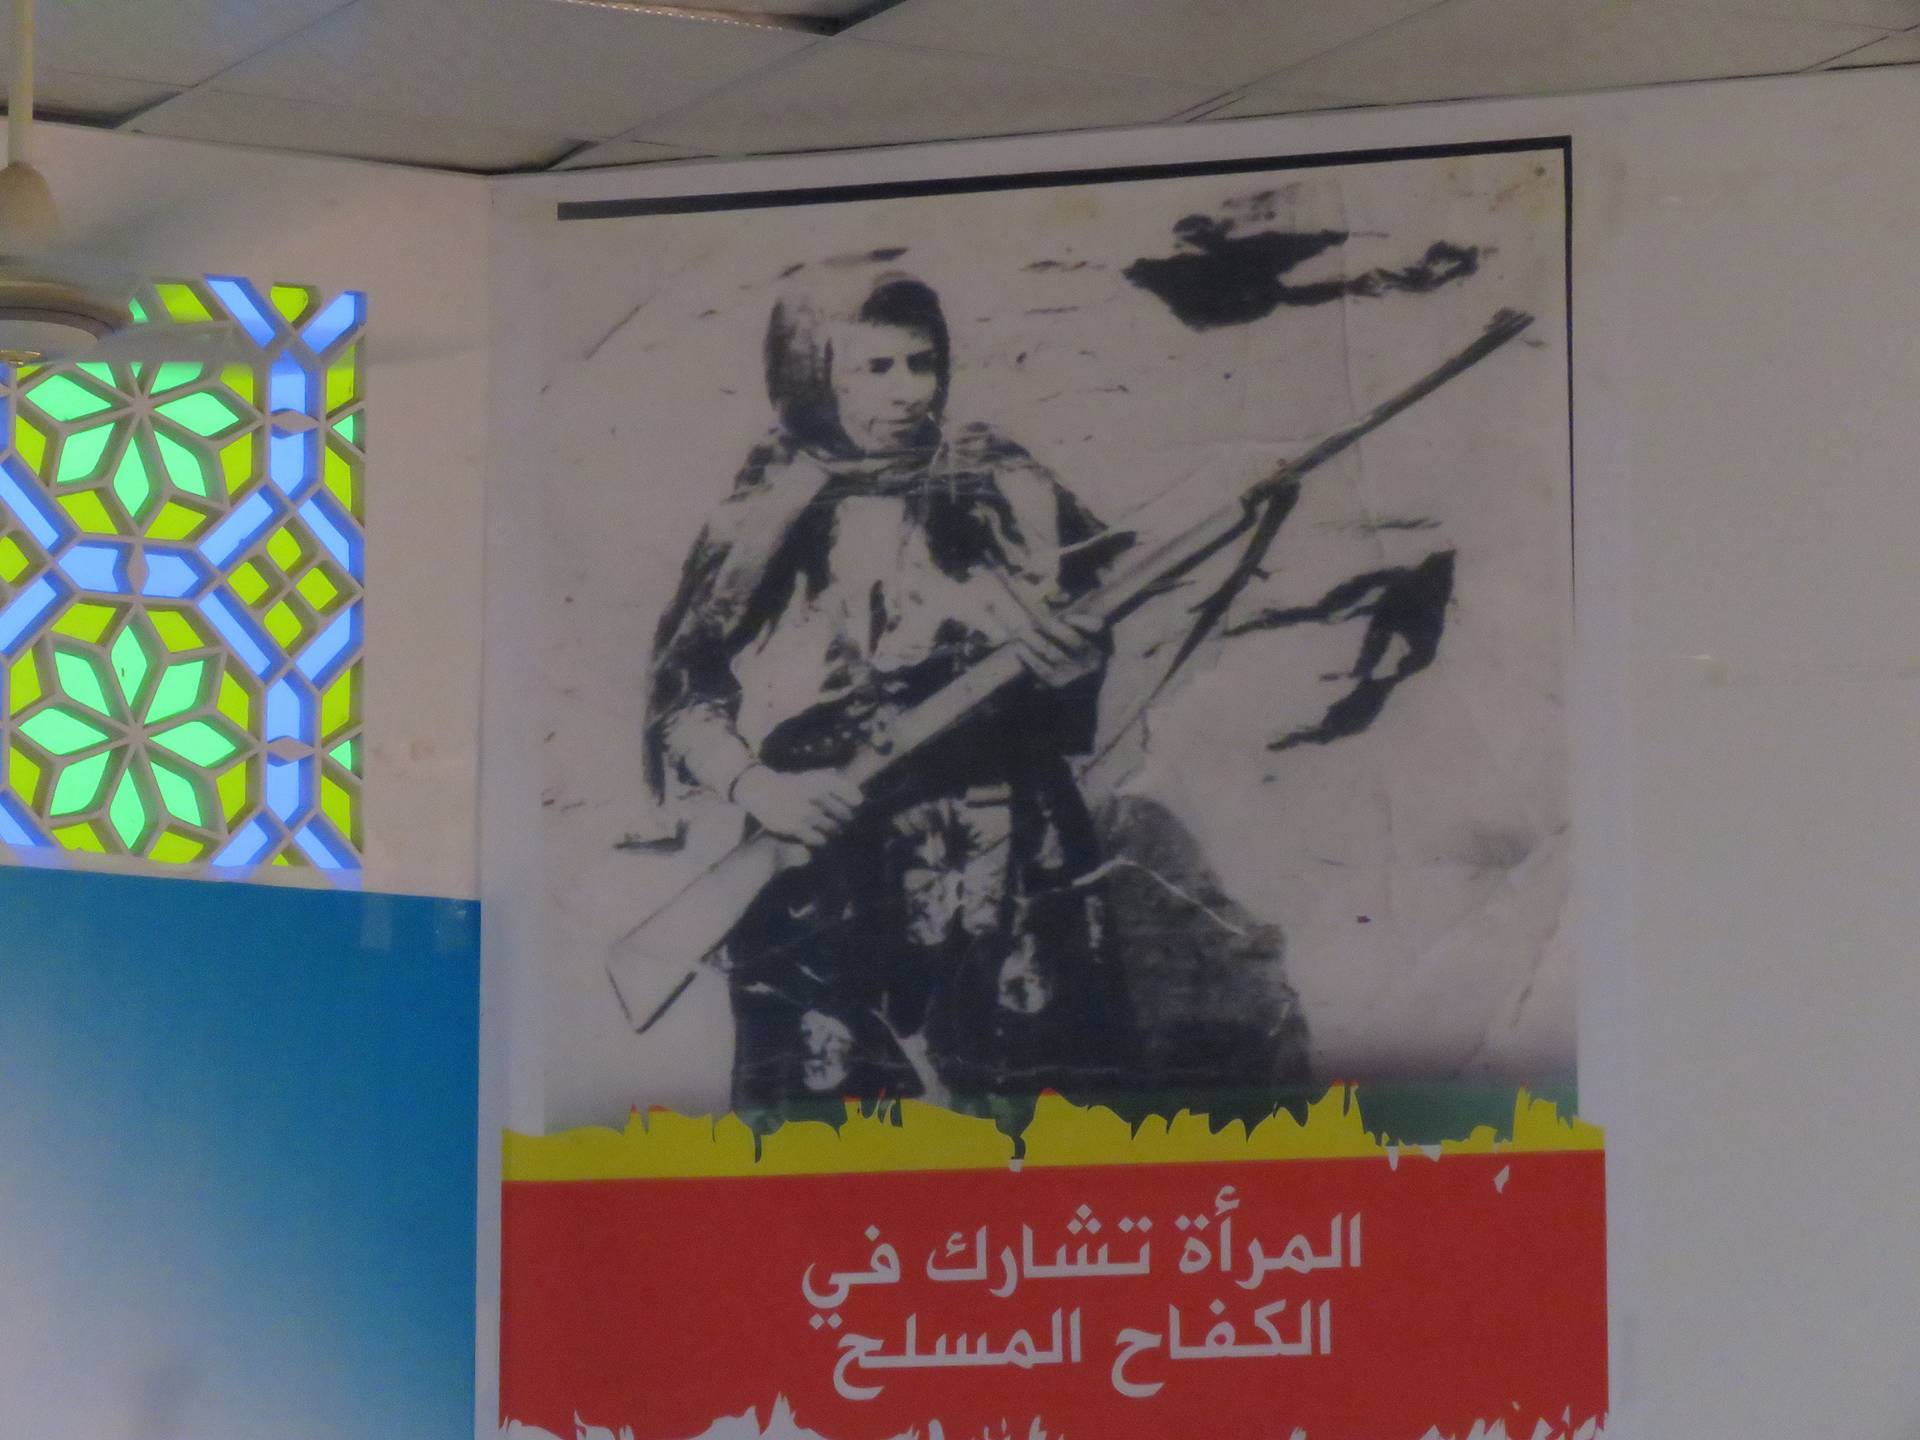 شاهد صورا لاحتفال محافظة بمأرب بذكرى ثورة اكتوبر الـ54